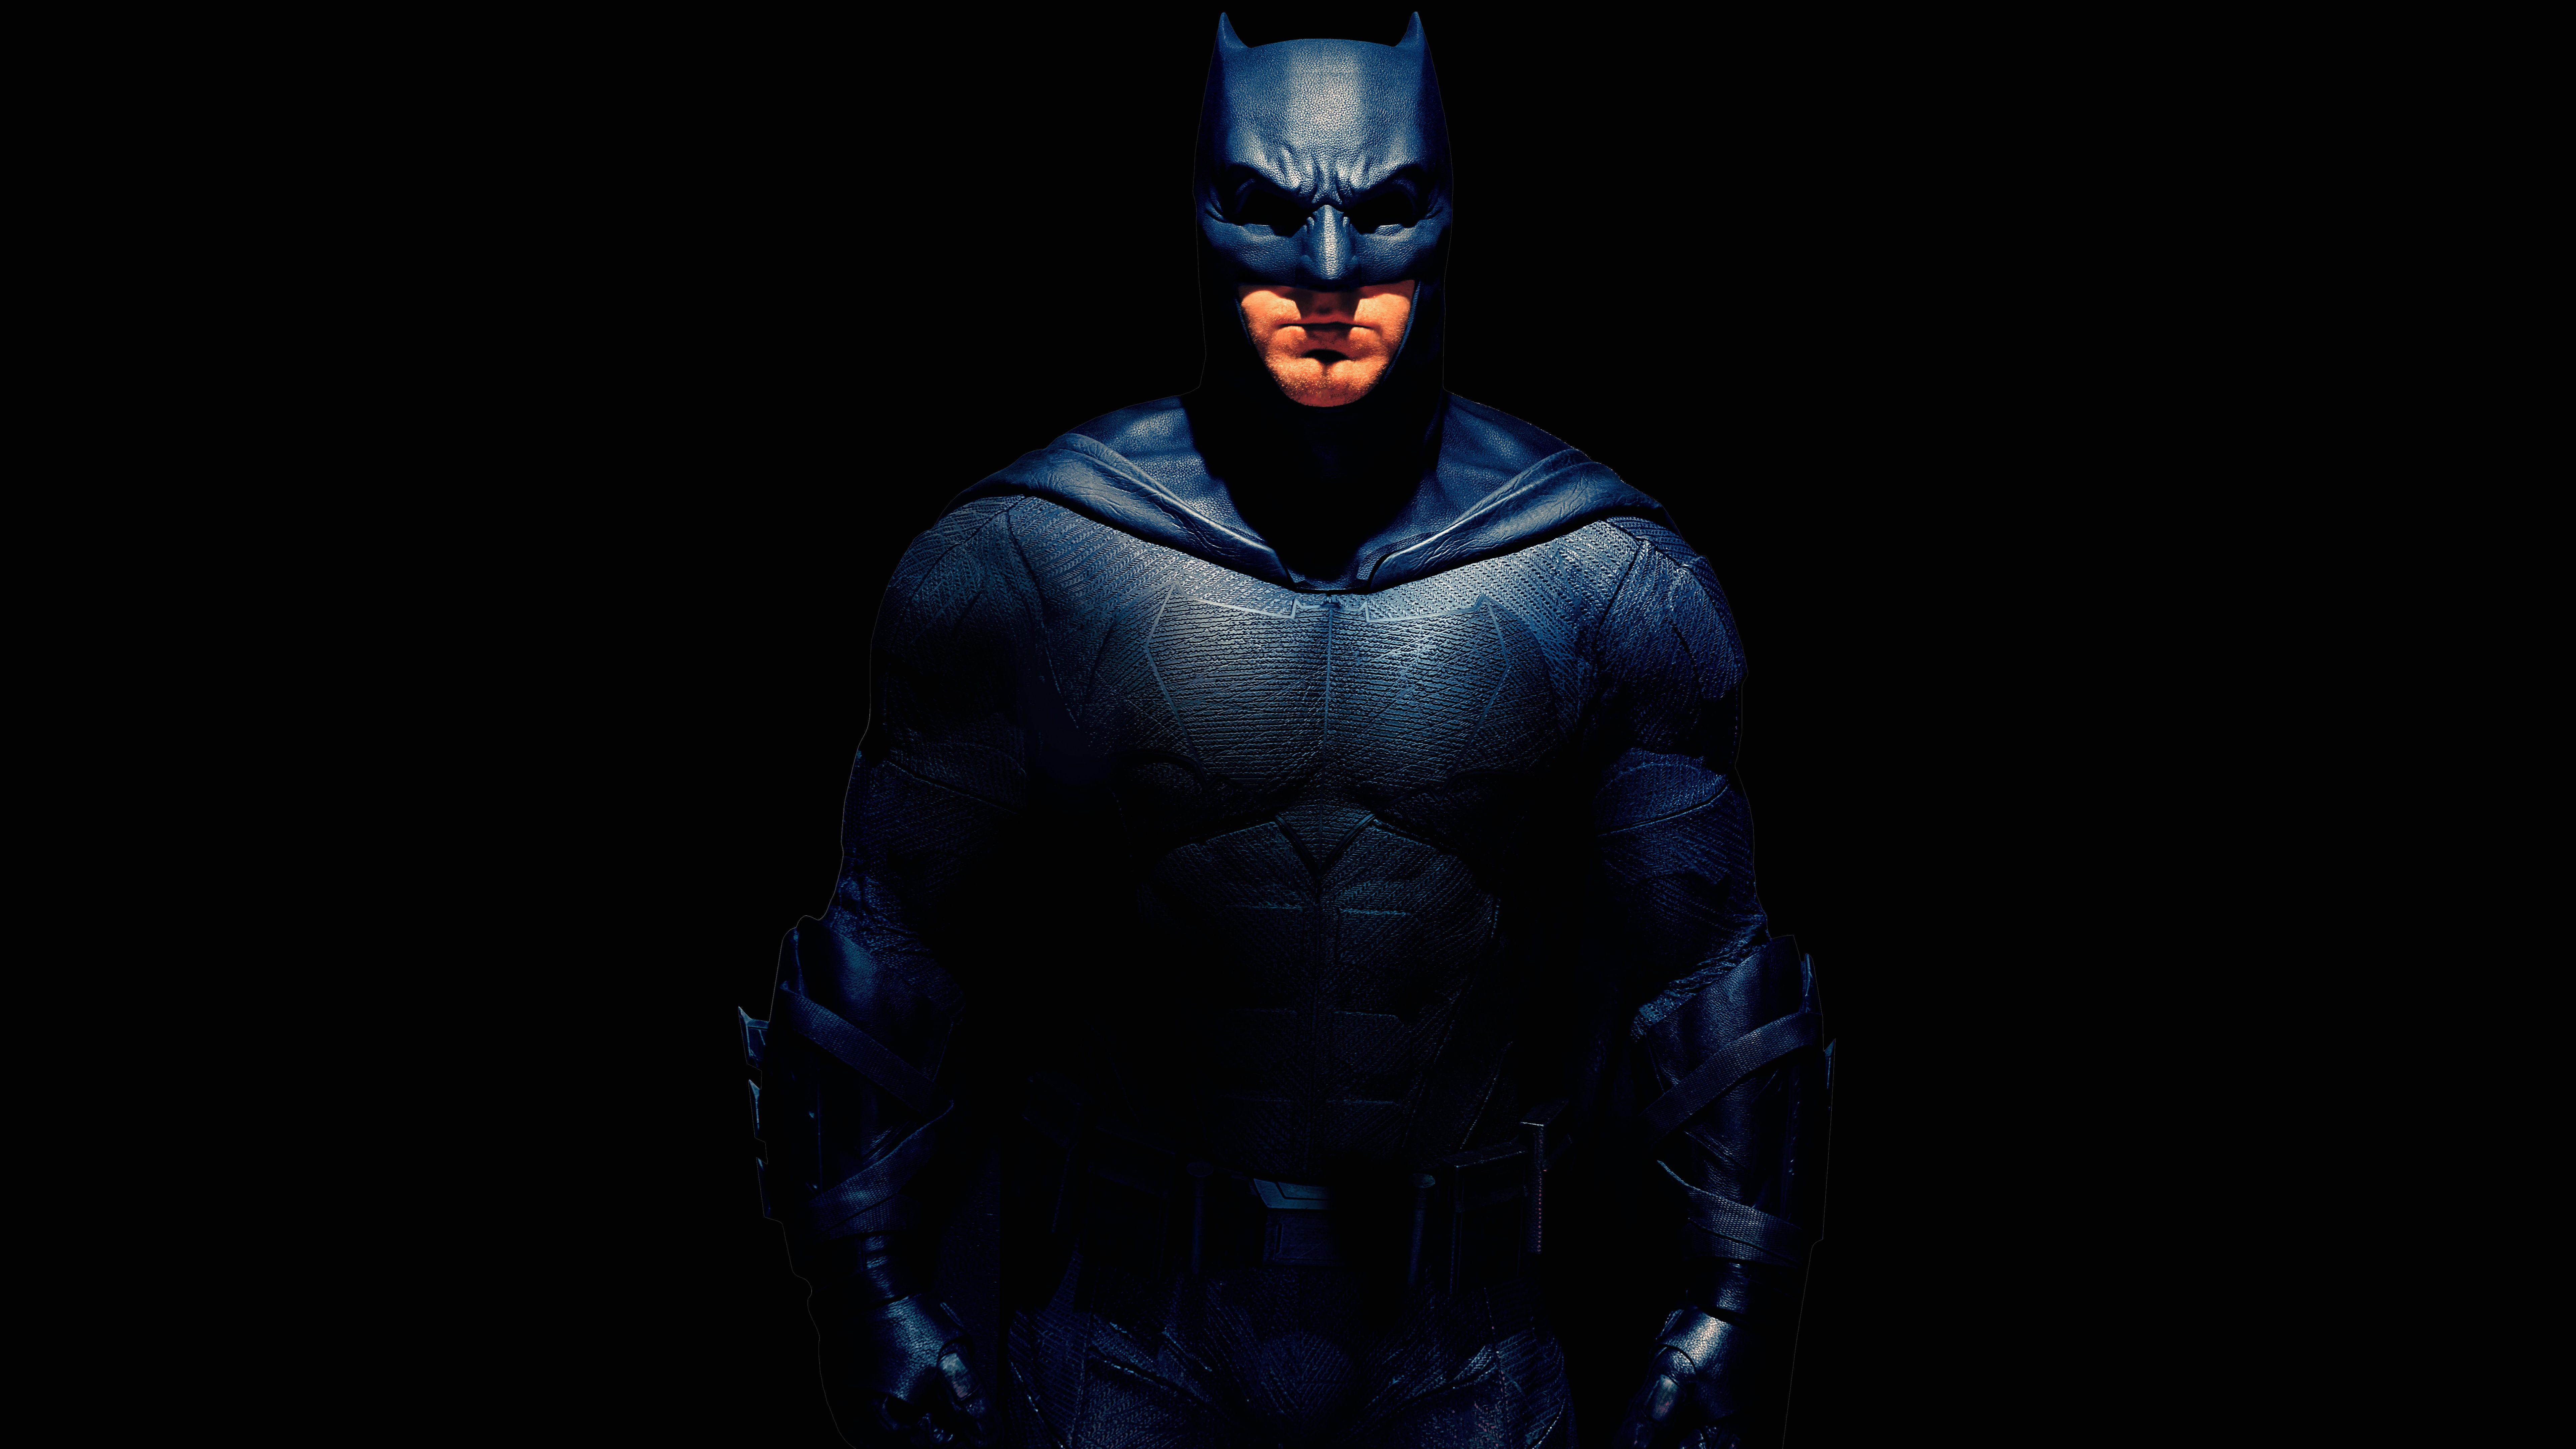 7680x4320 Hình nền Batman, Ben Affleck, Liên minh công lý, 2017, 4K, 8K, Phim